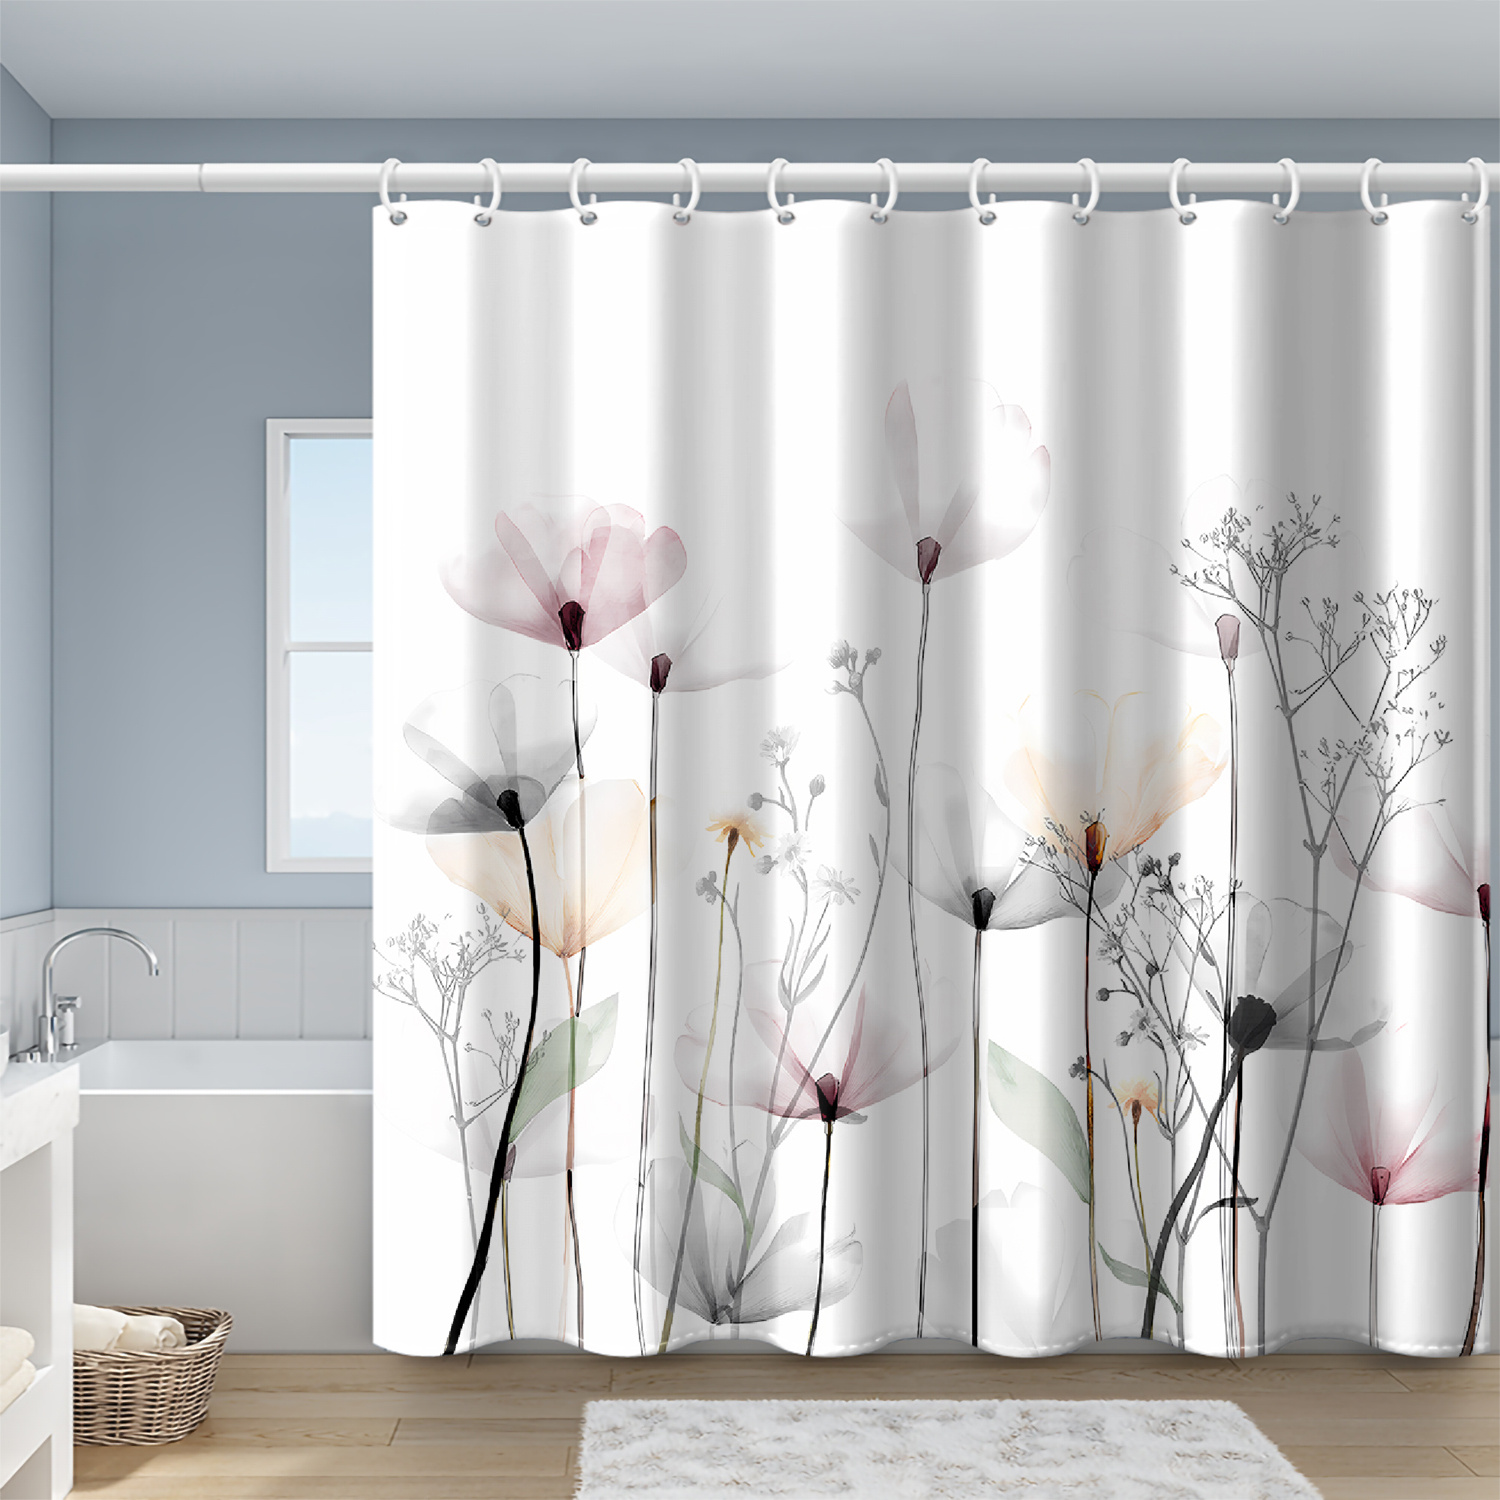 Cortina de ducha blanca para decoración de baño, cortina blanca floral  moderna para baño, cortina de ducha de poliéster impermeable con ganchos,  72 x